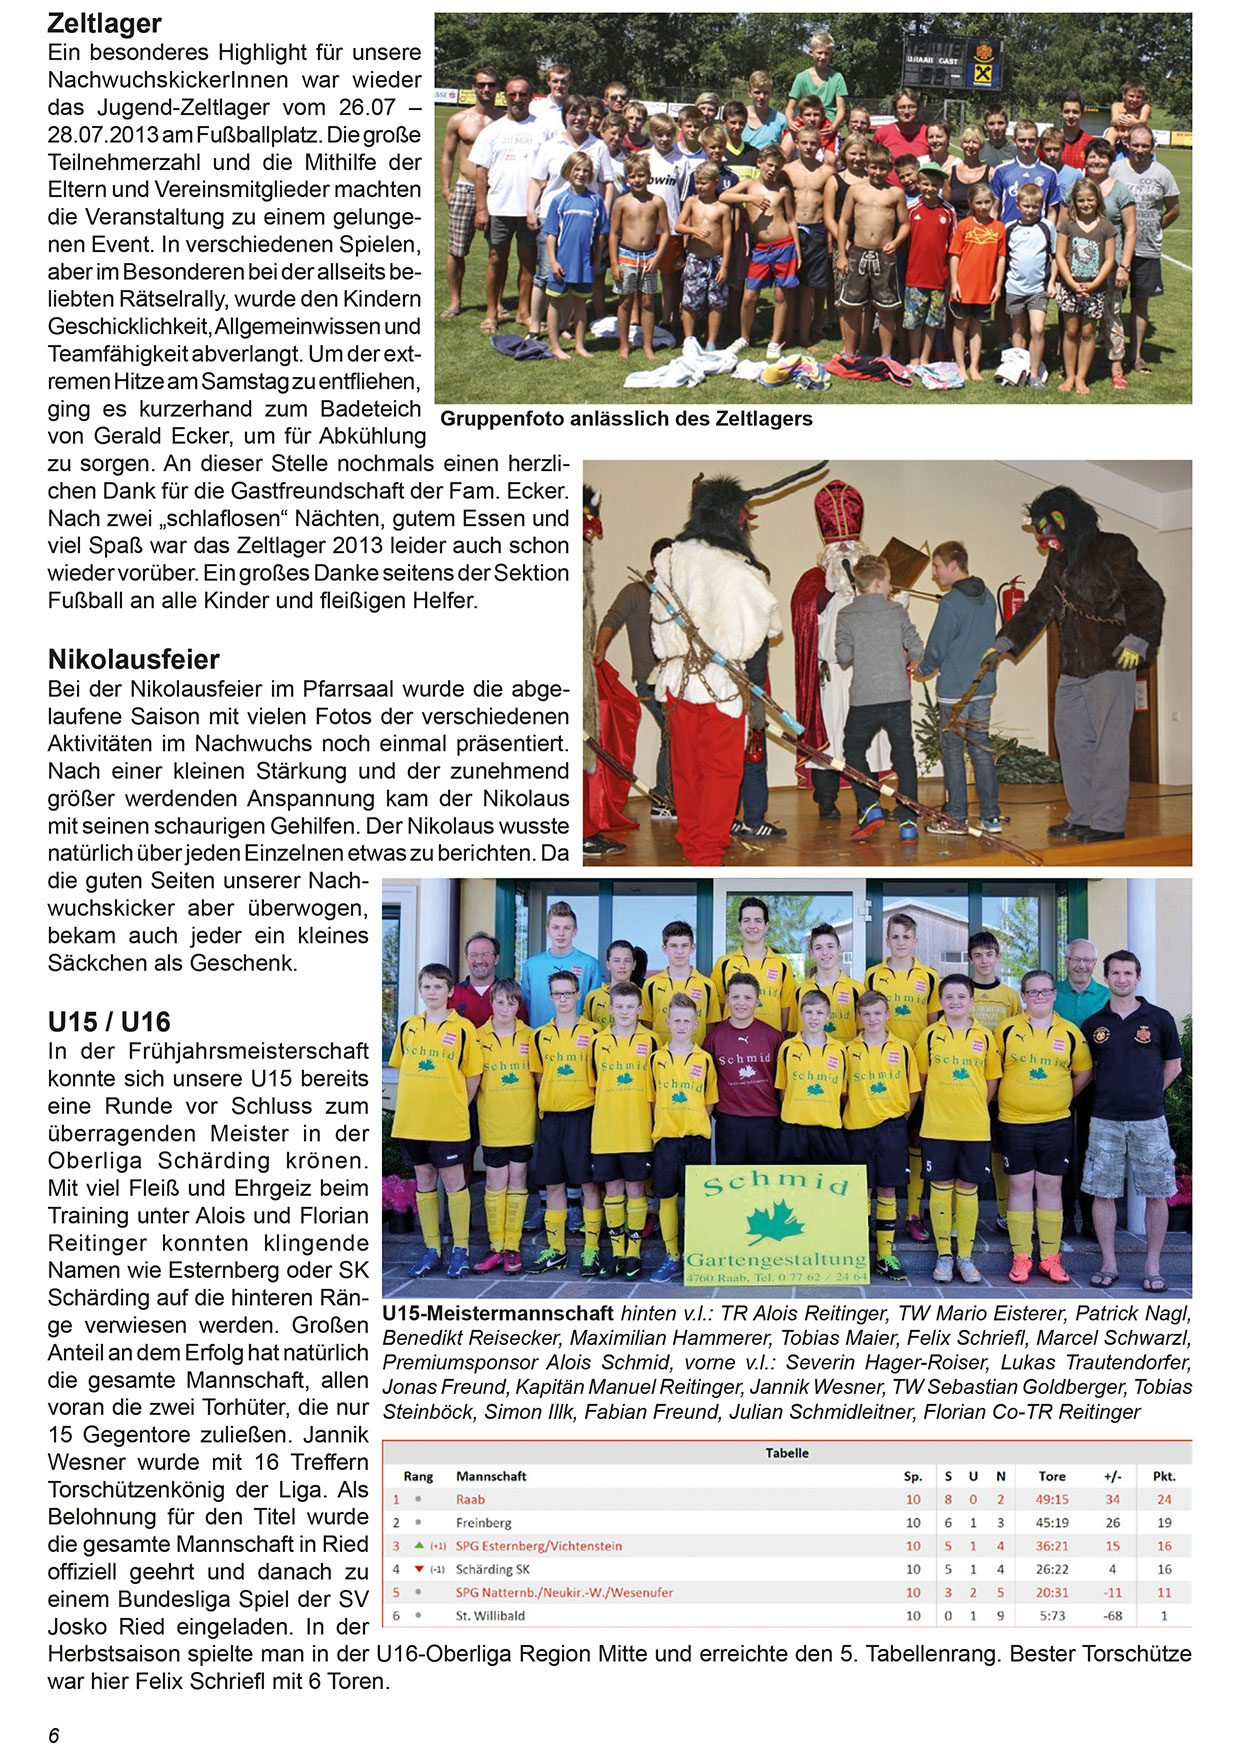 Unionzeitung 2013 - Seite 06